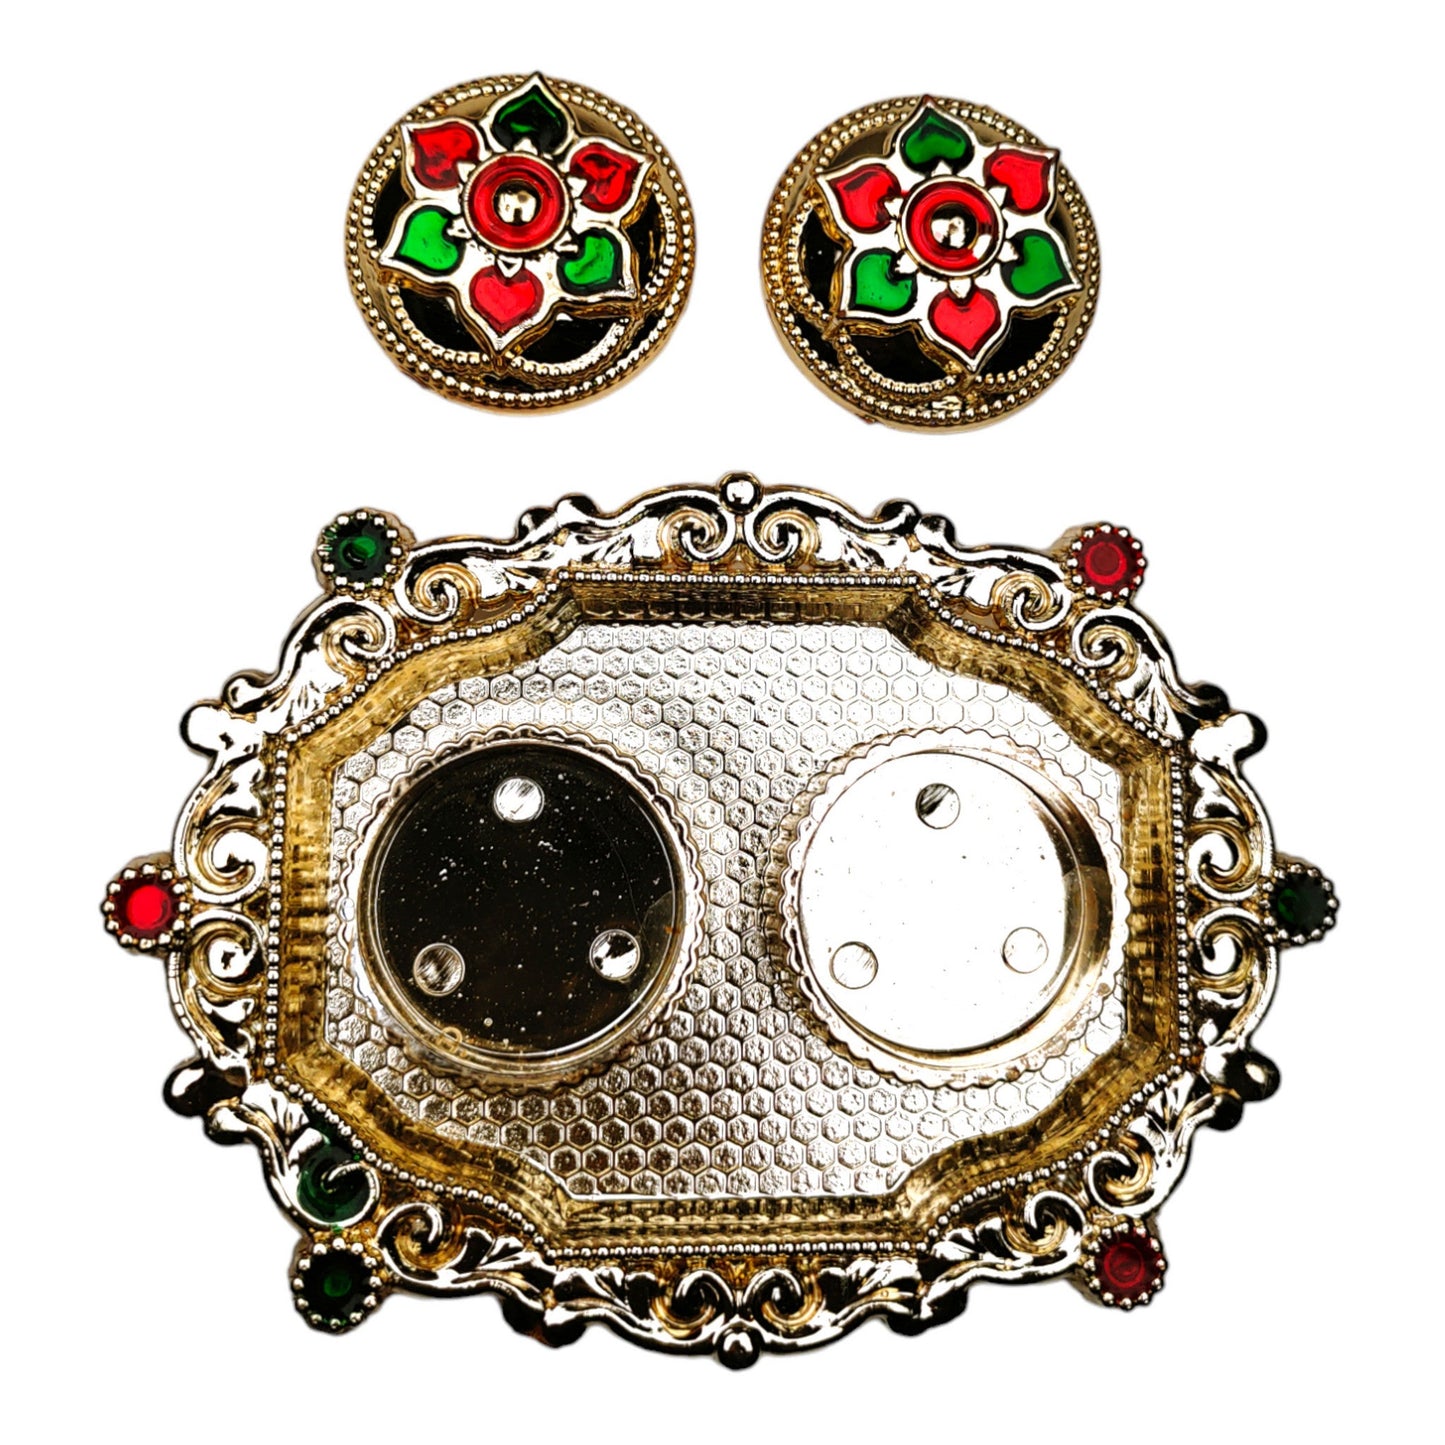 Decorative Platter Plate of Roli Chawal for Puja Raksha-Bandhan Diwali or Tilak Tika Function - 13488-91